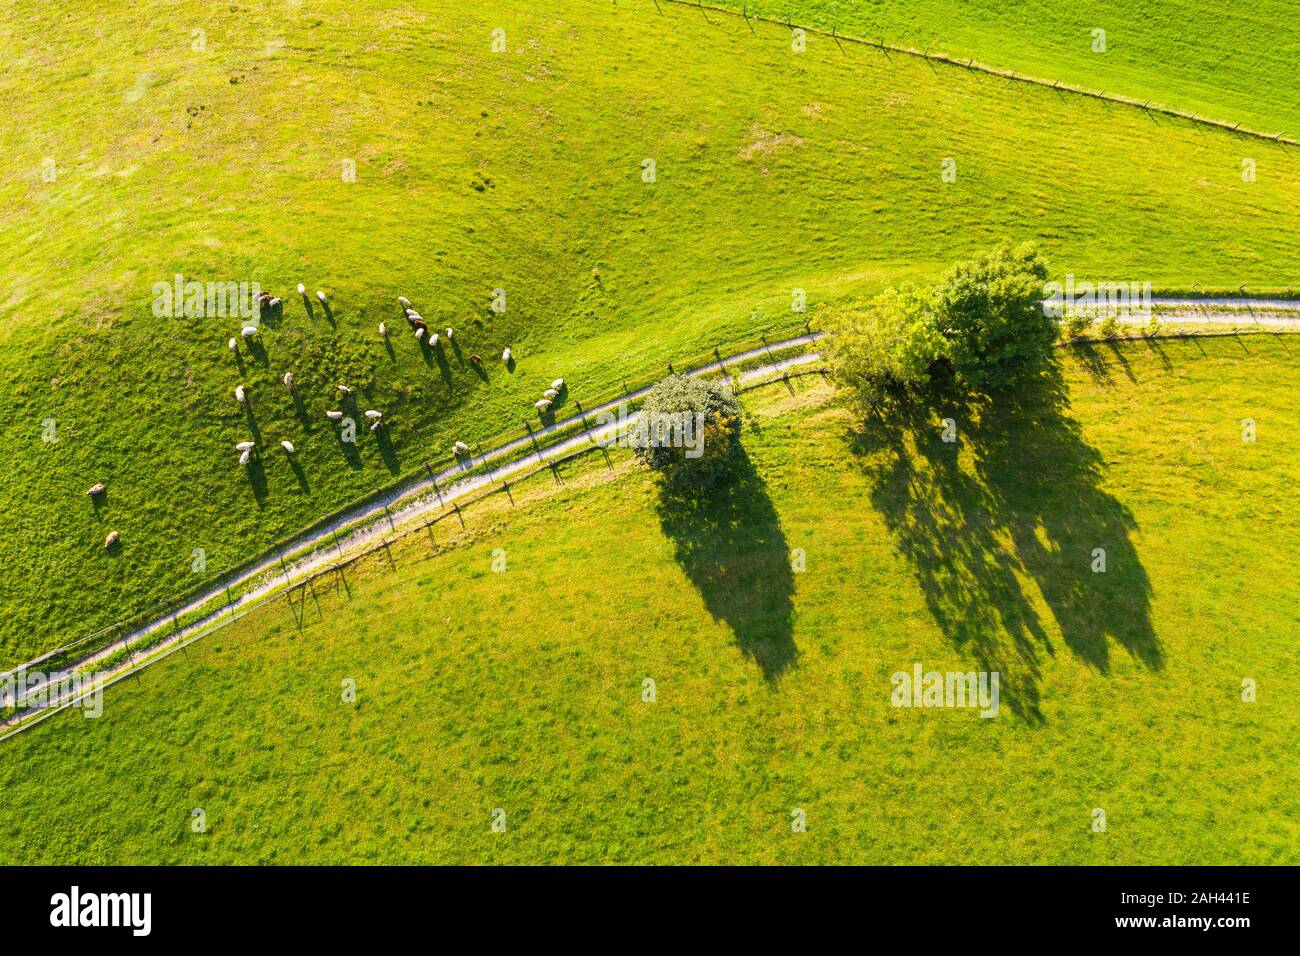 Deutschland, Bayern, Beuerberg, Luftaufnahme der Herde Schafe grasen auf der Weide neben Country Road Stockfoto